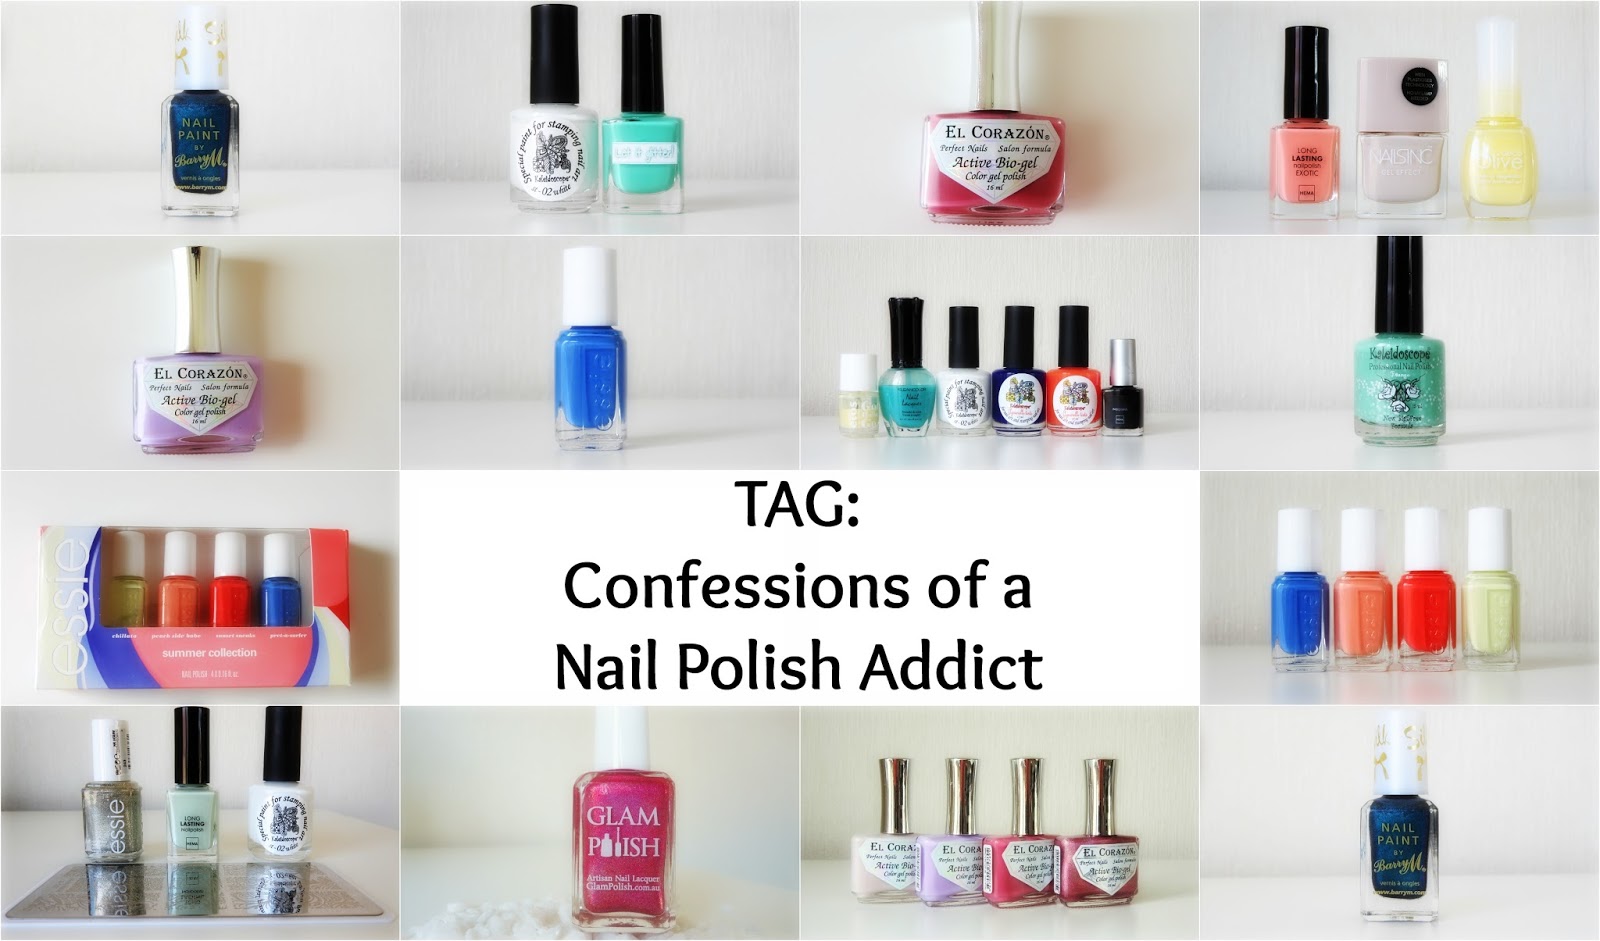 10. Nail Art Addict Hannah Lee's Nail Polish Collection - wide 4